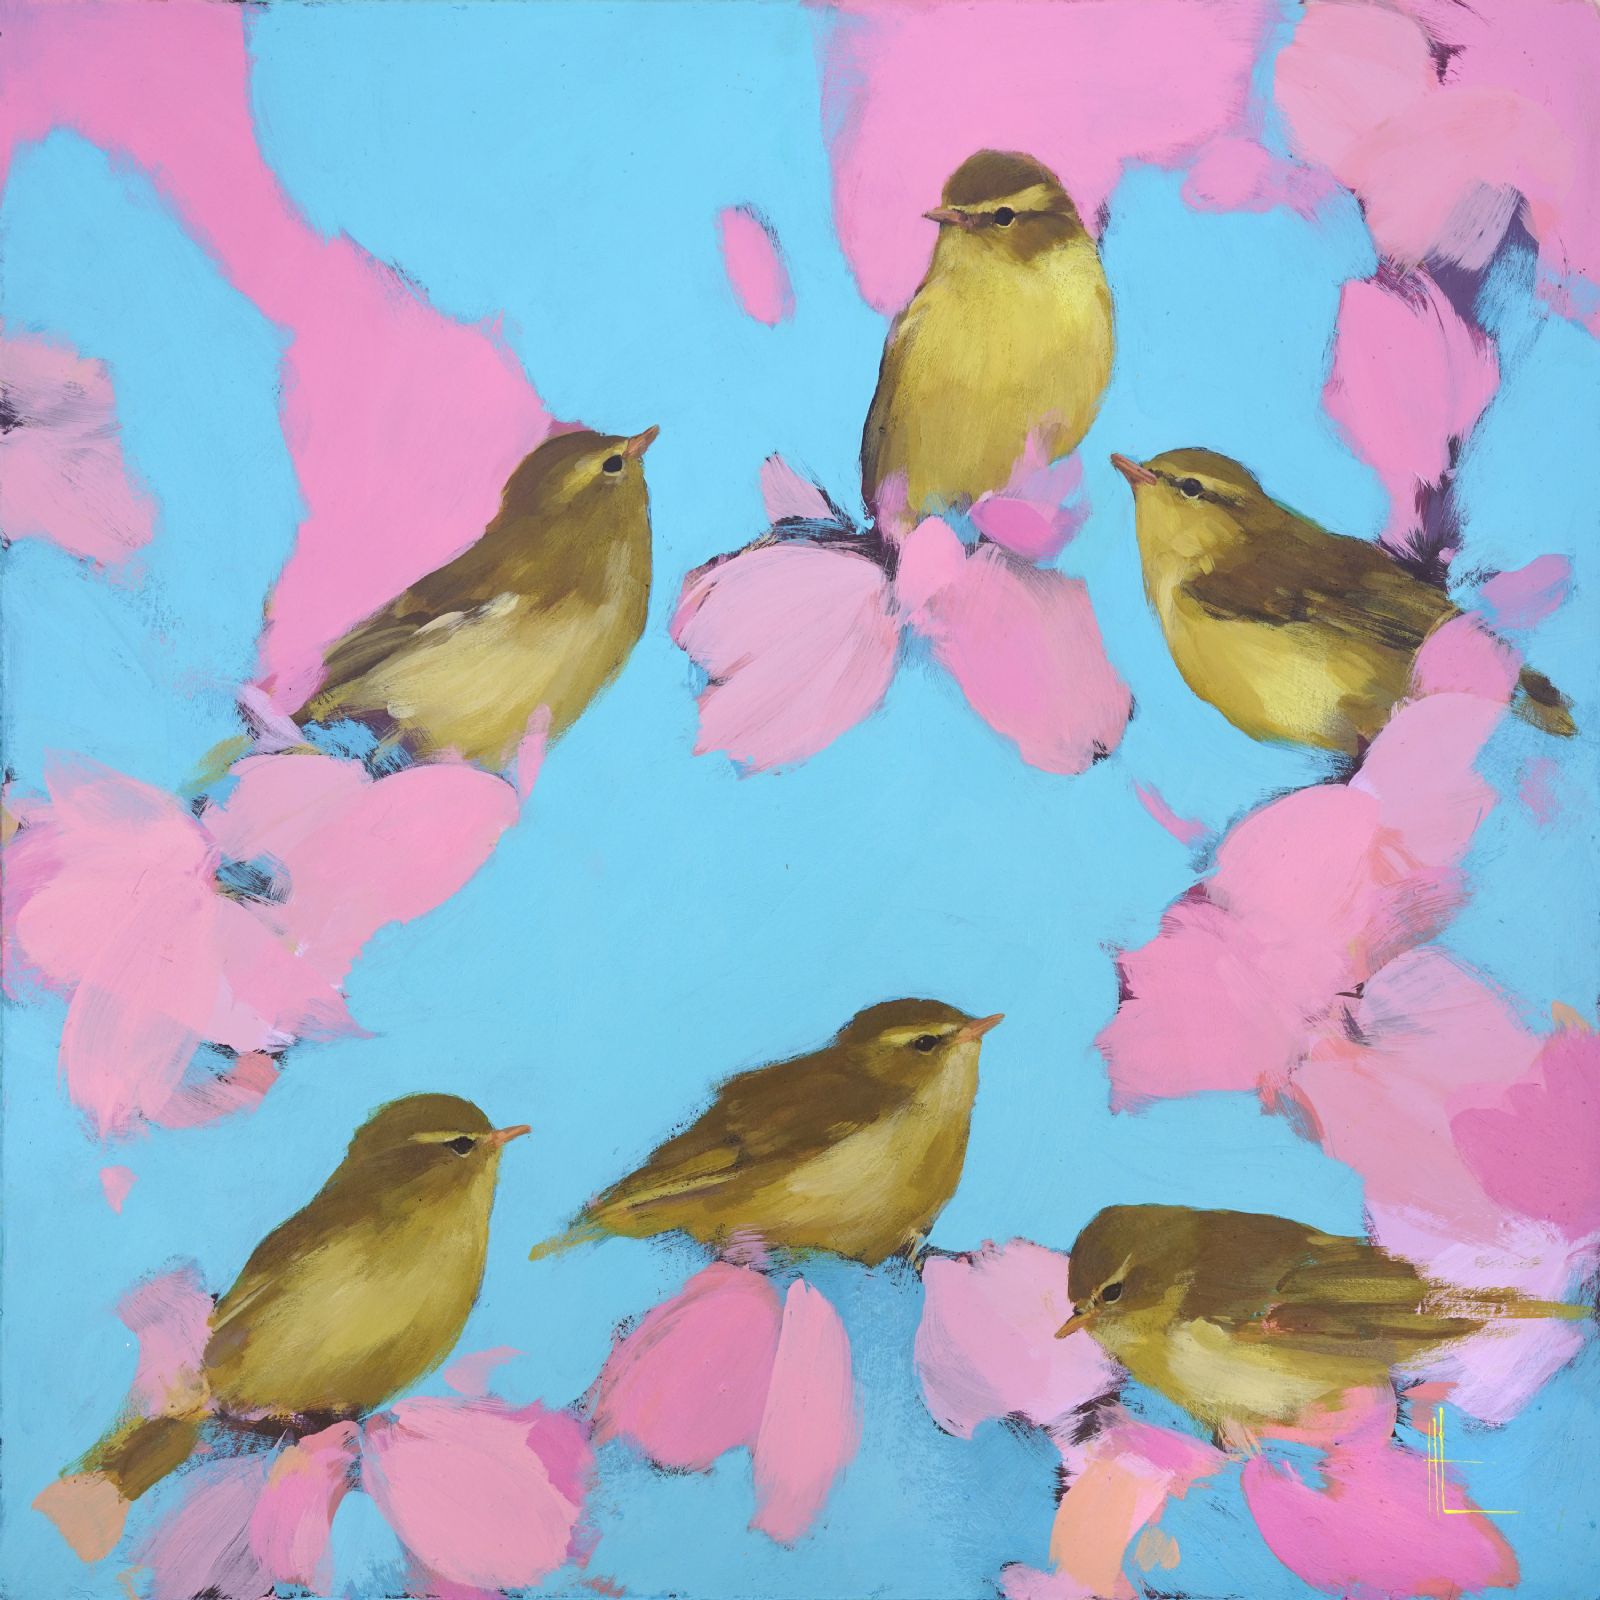 Heidi Langridge - Warblers in pink and blue